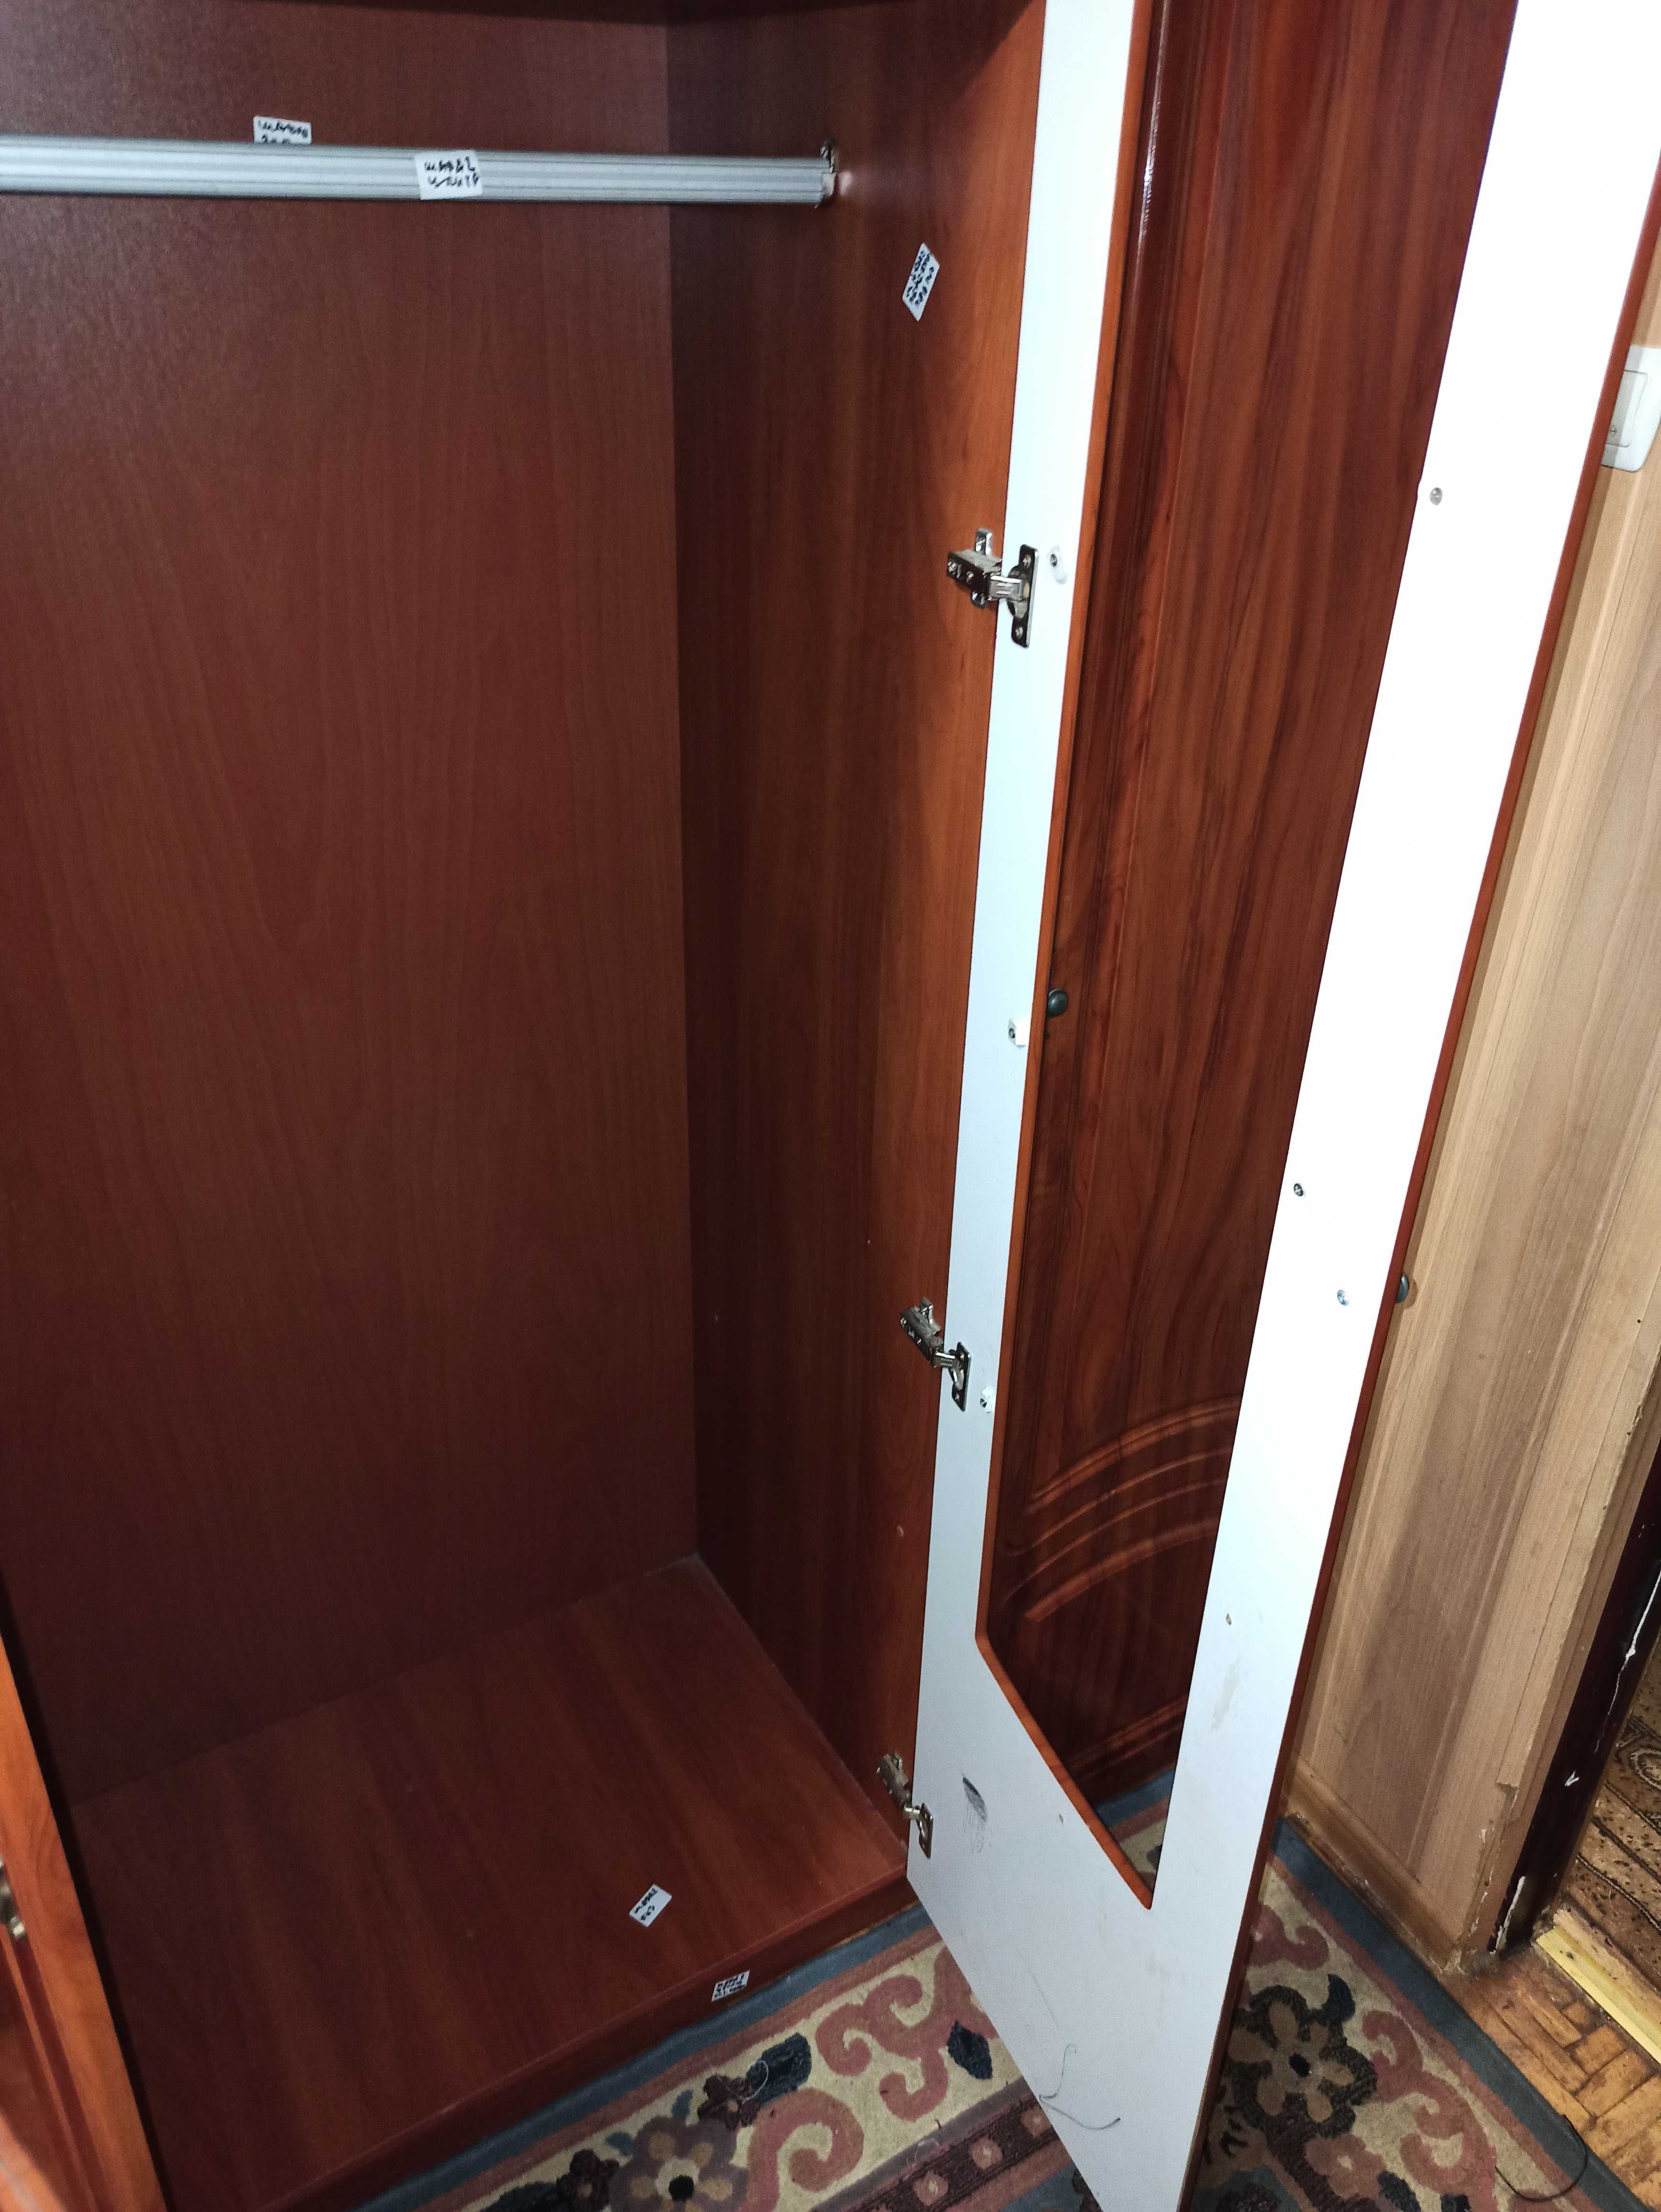 Шкаф стенка функциональный практичный и удобный В2185хШ1765хГ520